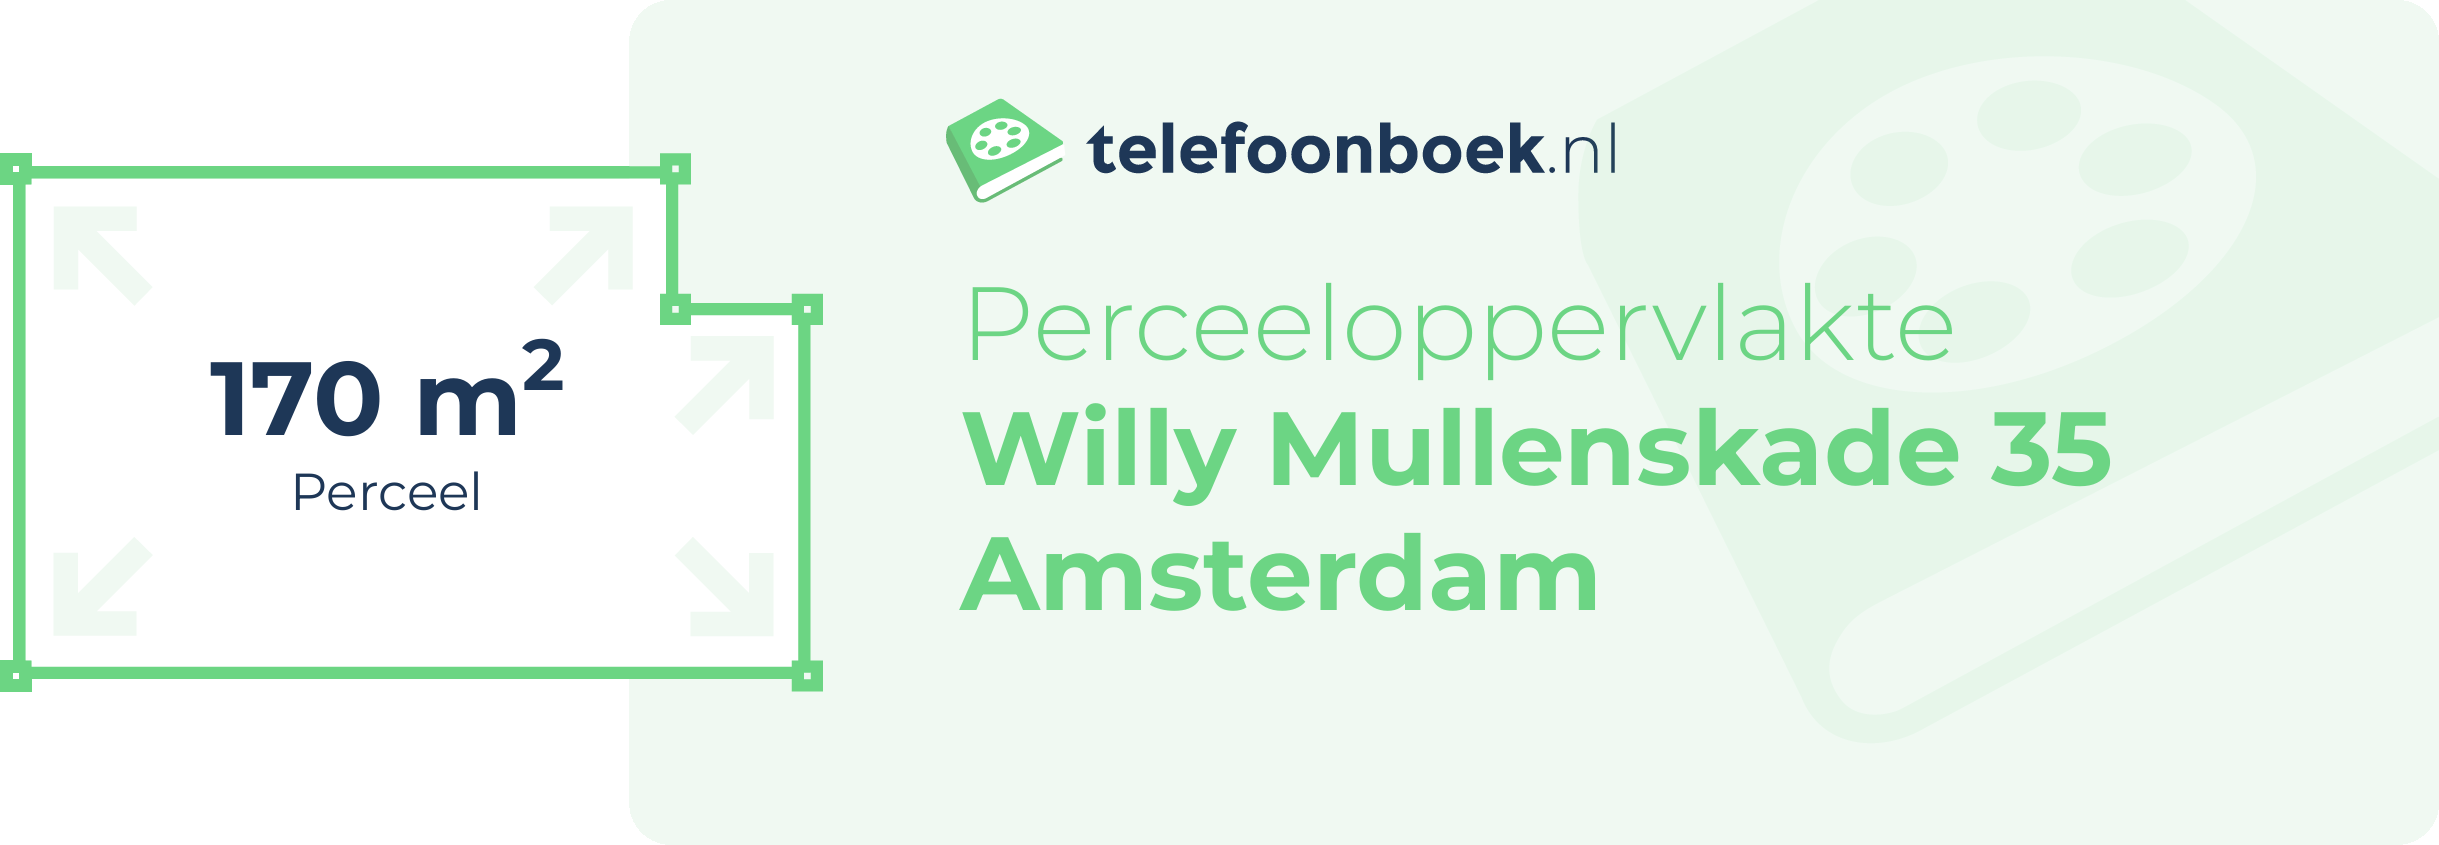 Perceeloppervlakte Willy Mullenskade 35 Amsterdam